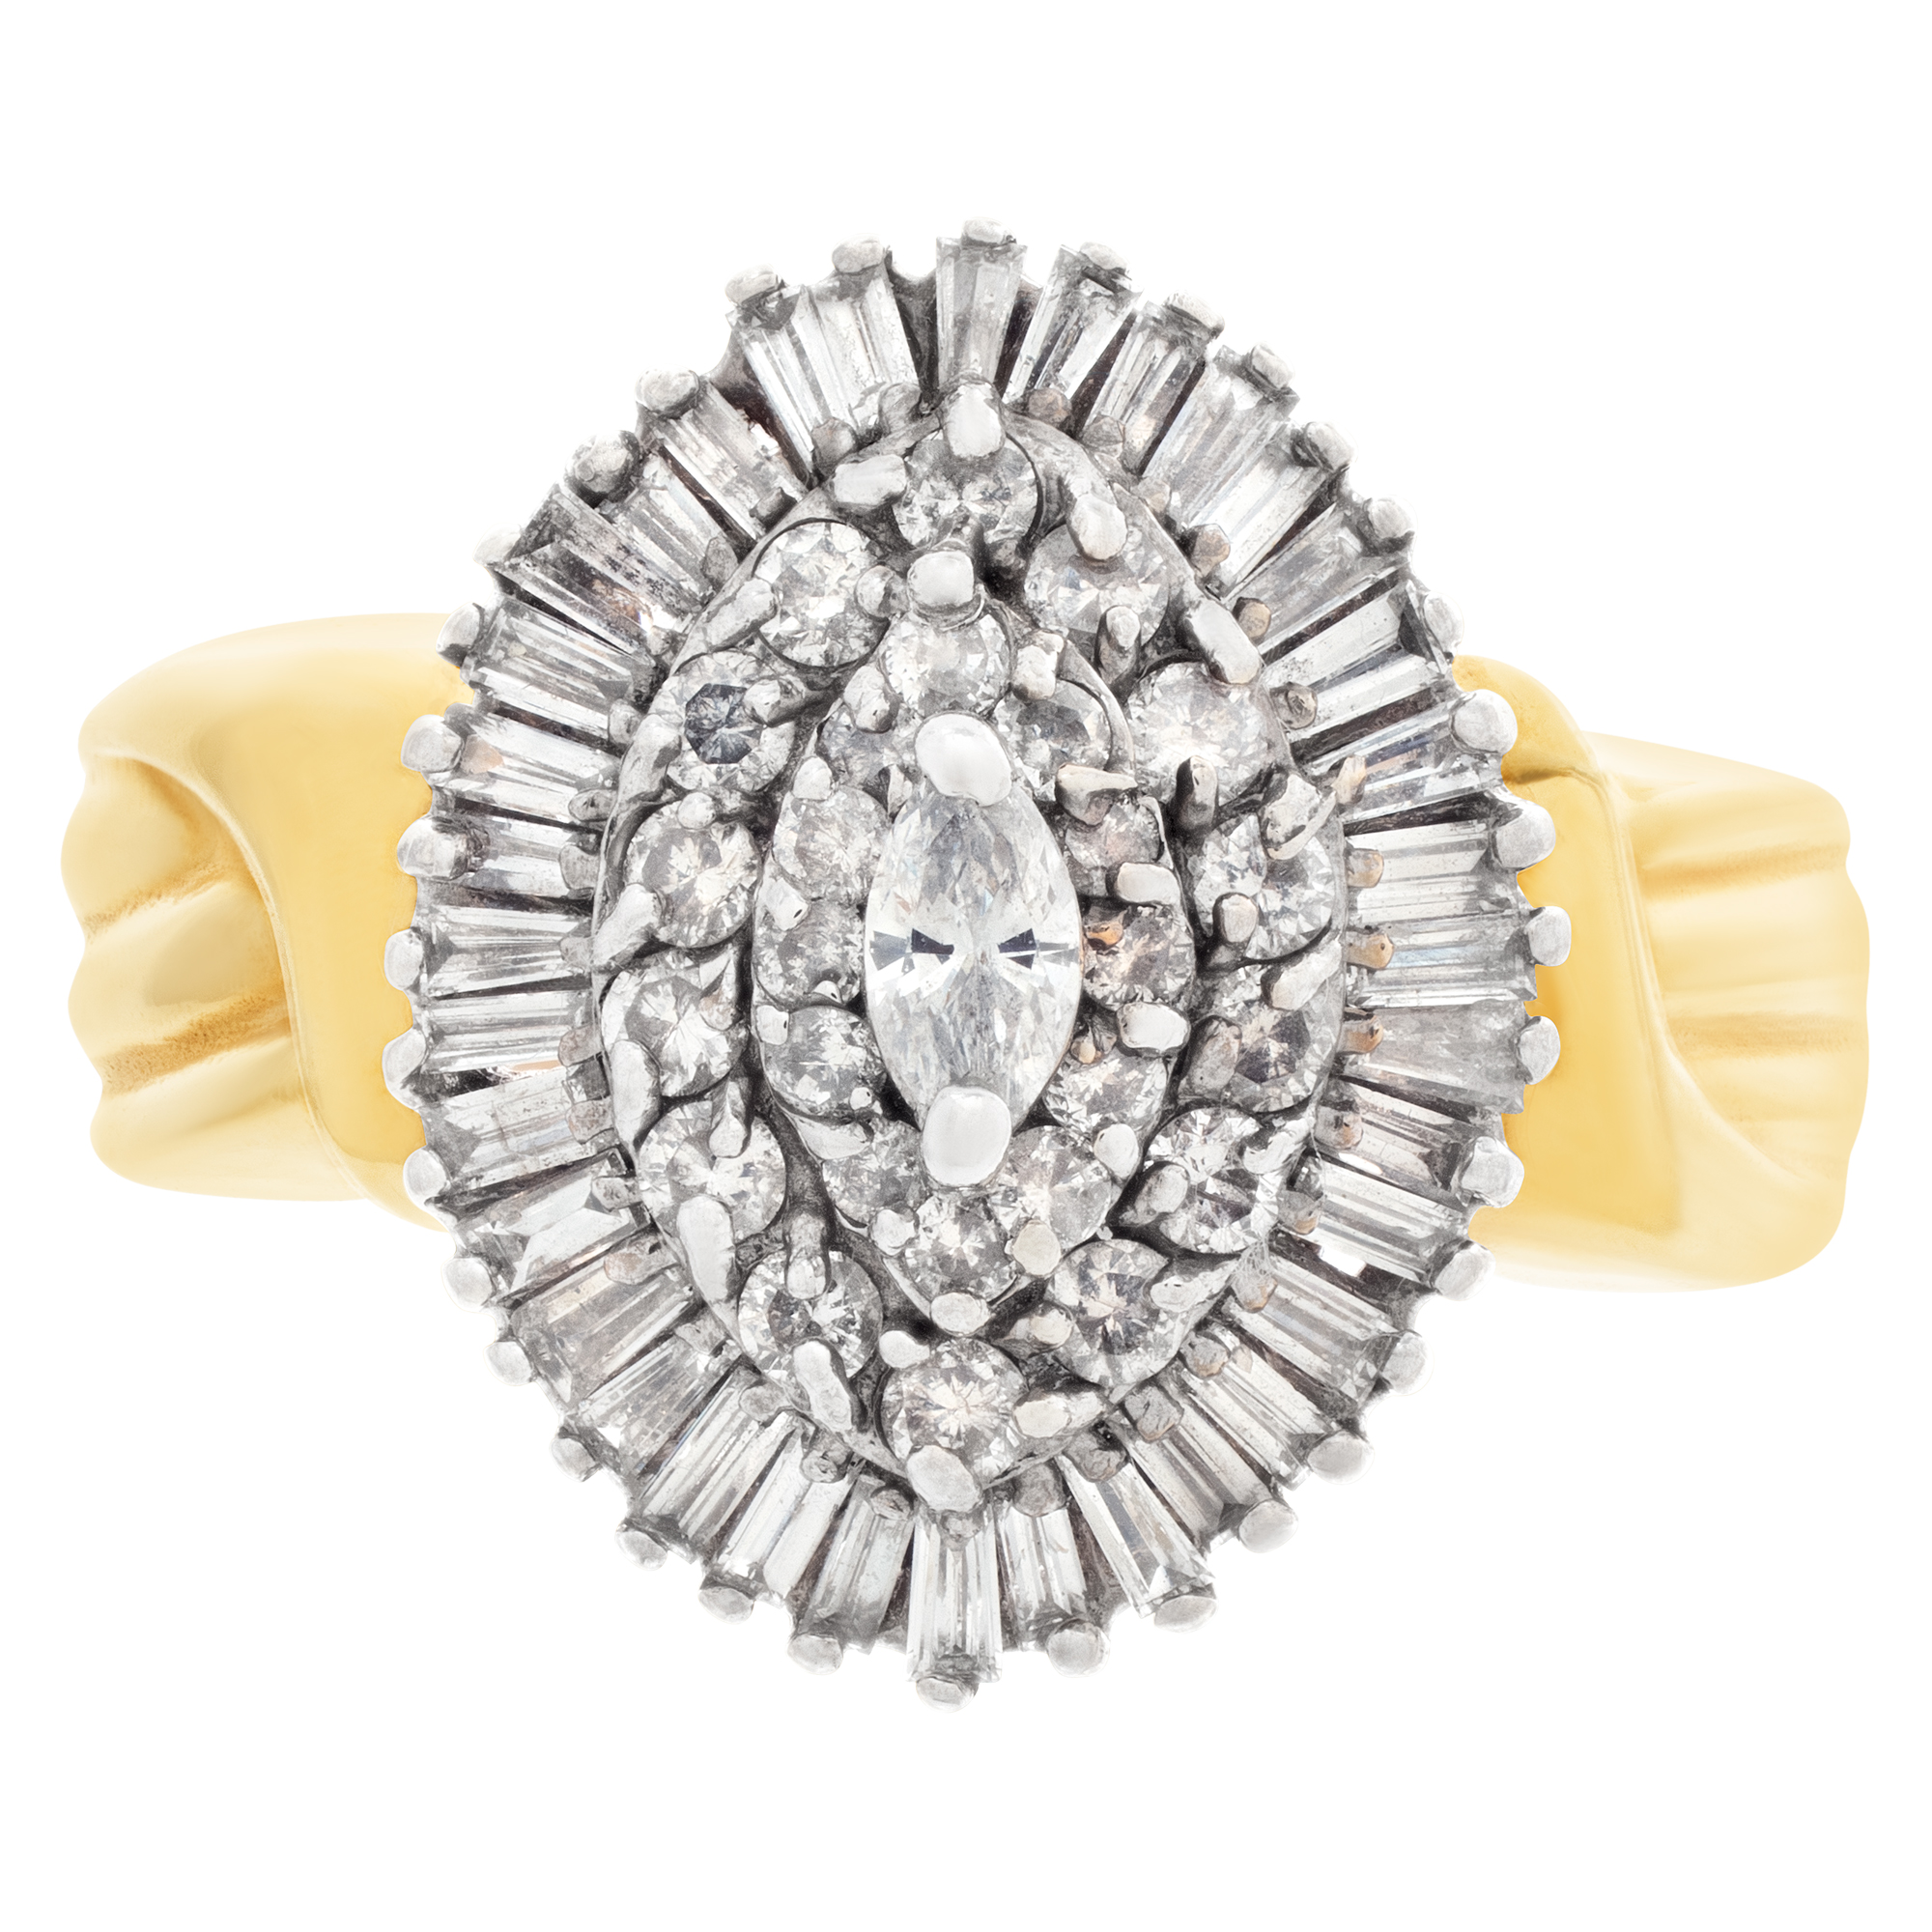 Ballerina diamond ring in 14k gold. 1.42 carats in diamonds. Size 9 image 2